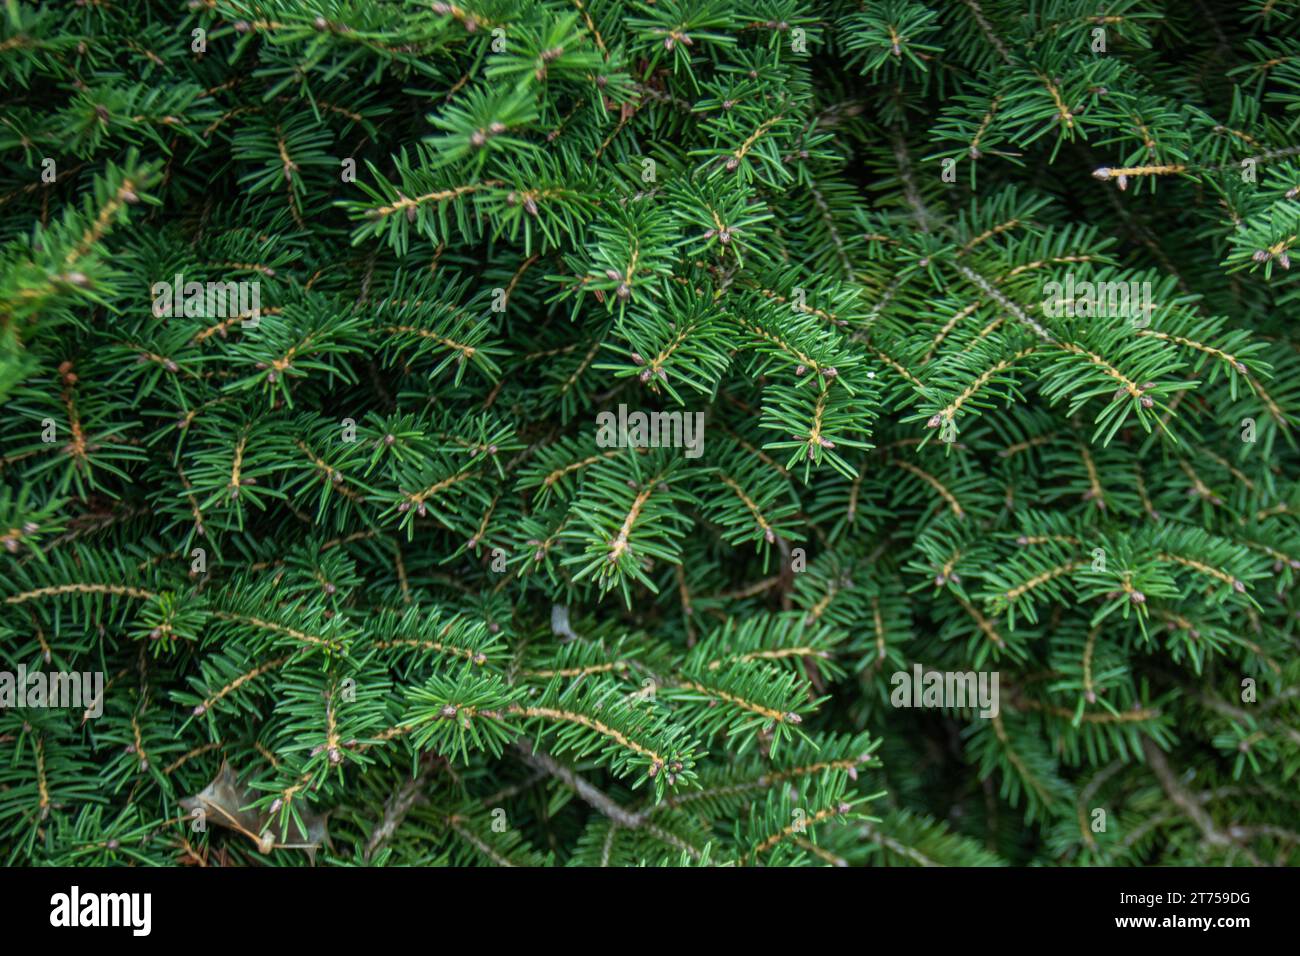 pino, i suoi rami verdi e fitti evocano la tranquillità della foresta Foto Stock